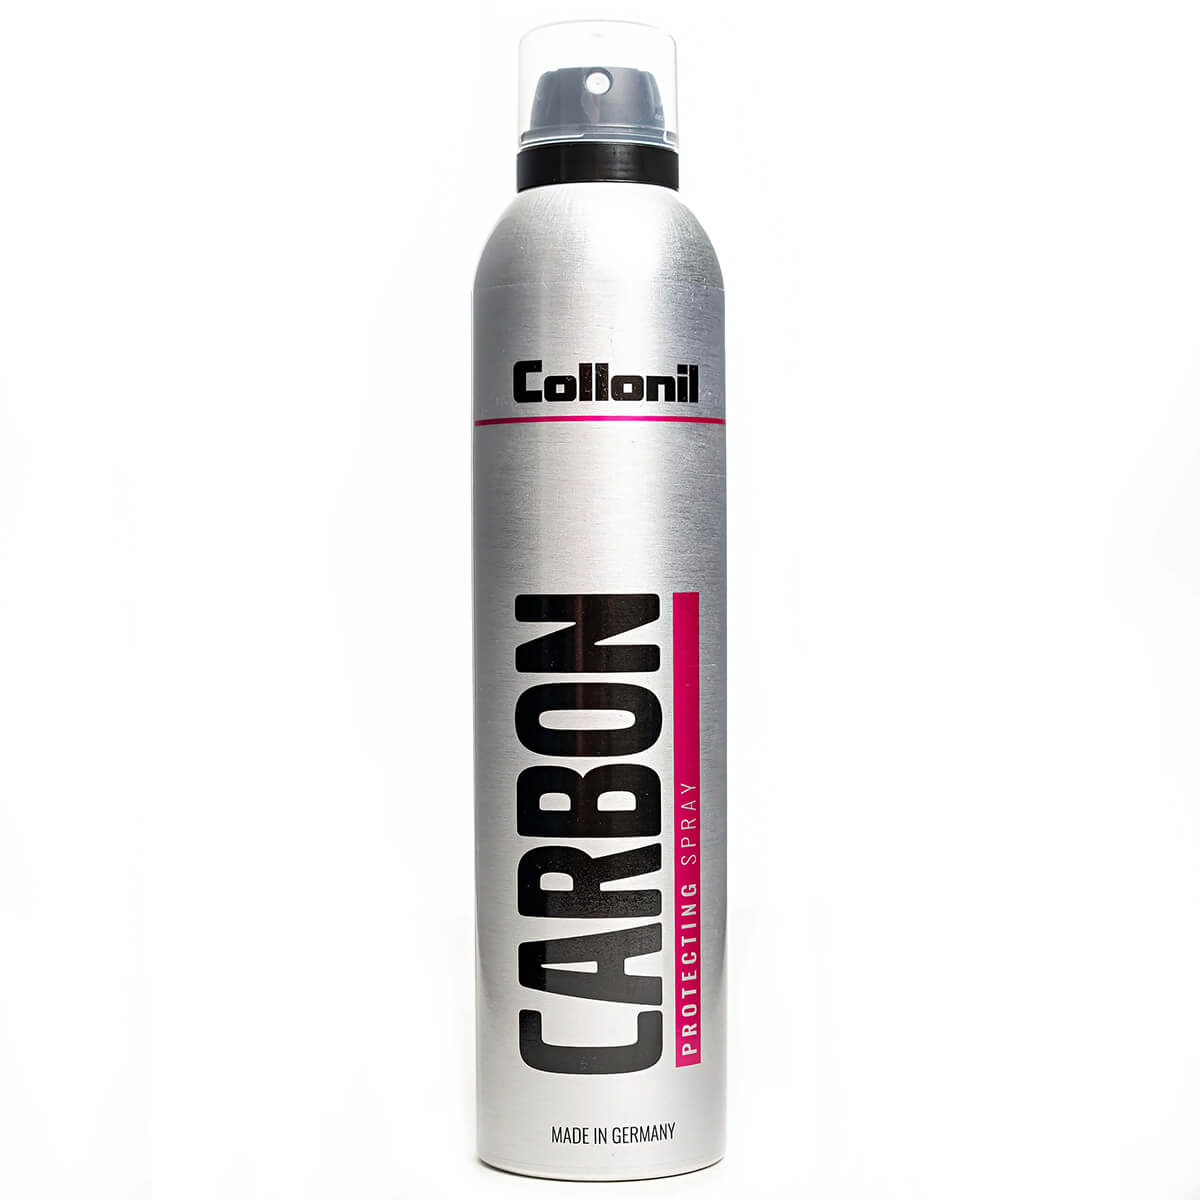 Защитный спрей для всех видов материалов  Collonil CARBON PROTEСTING SPRAY, 300 ml